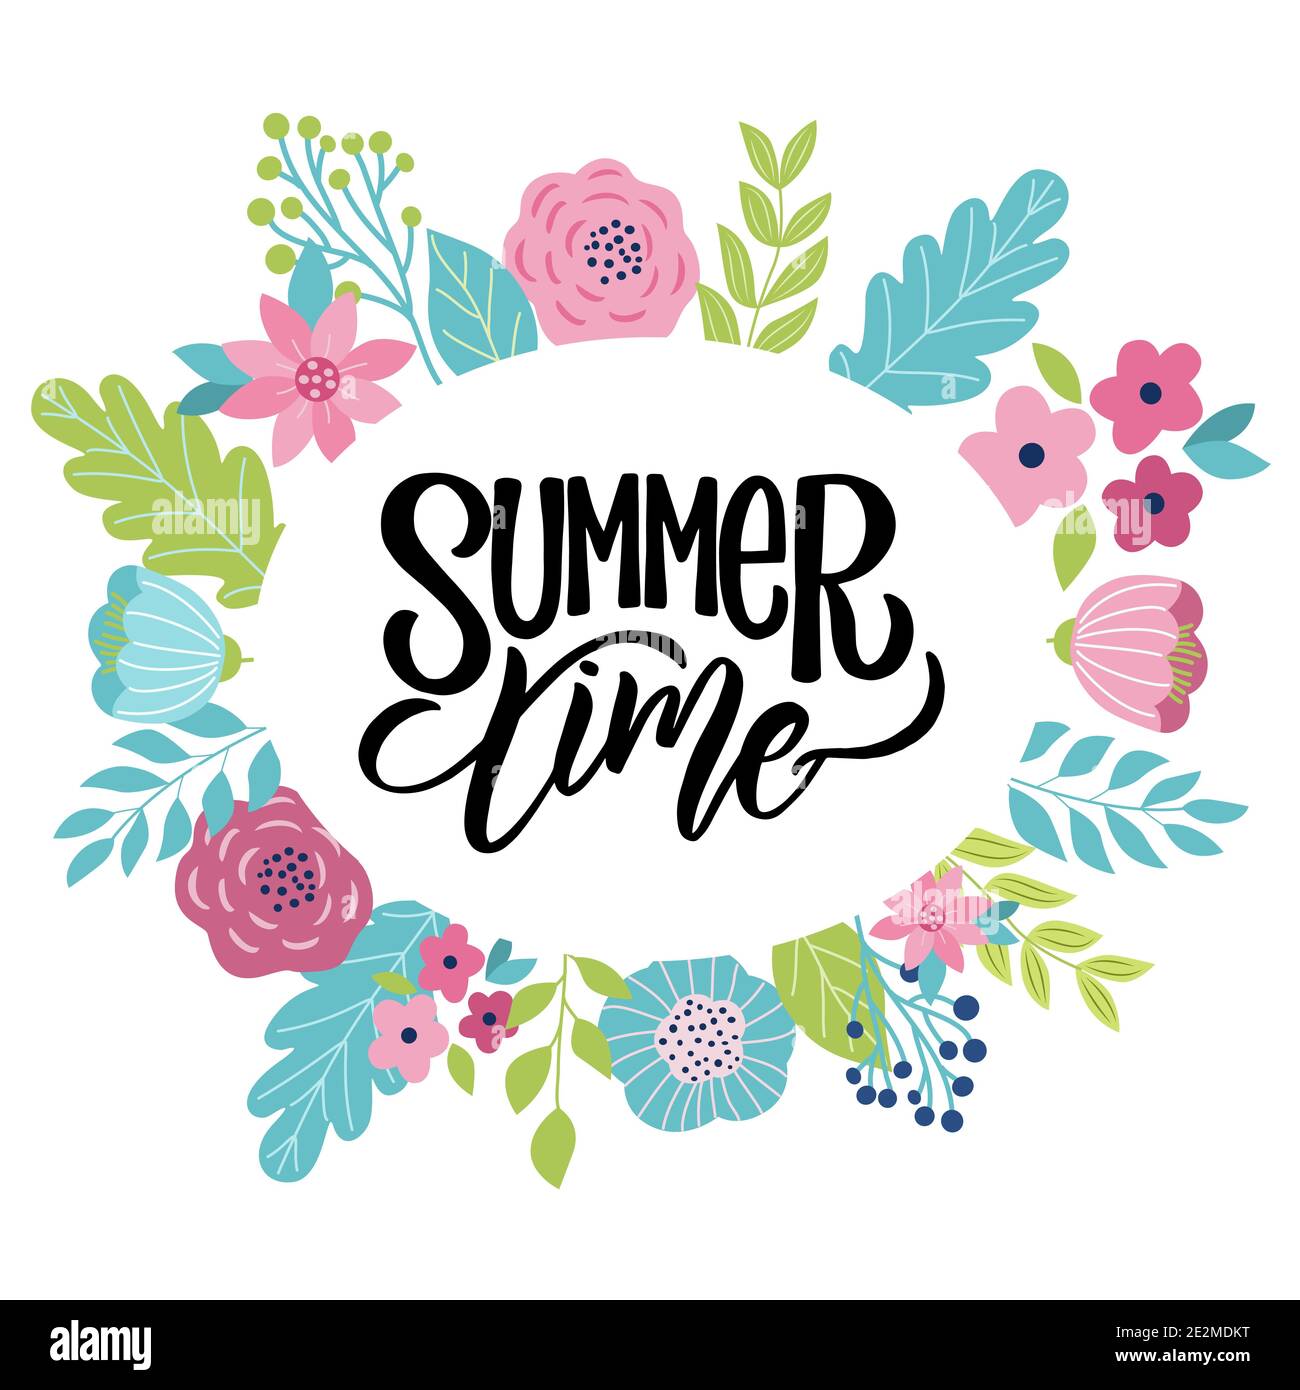 Urlaubskarte mit Blumen - Sommerzeit Stock Vektor